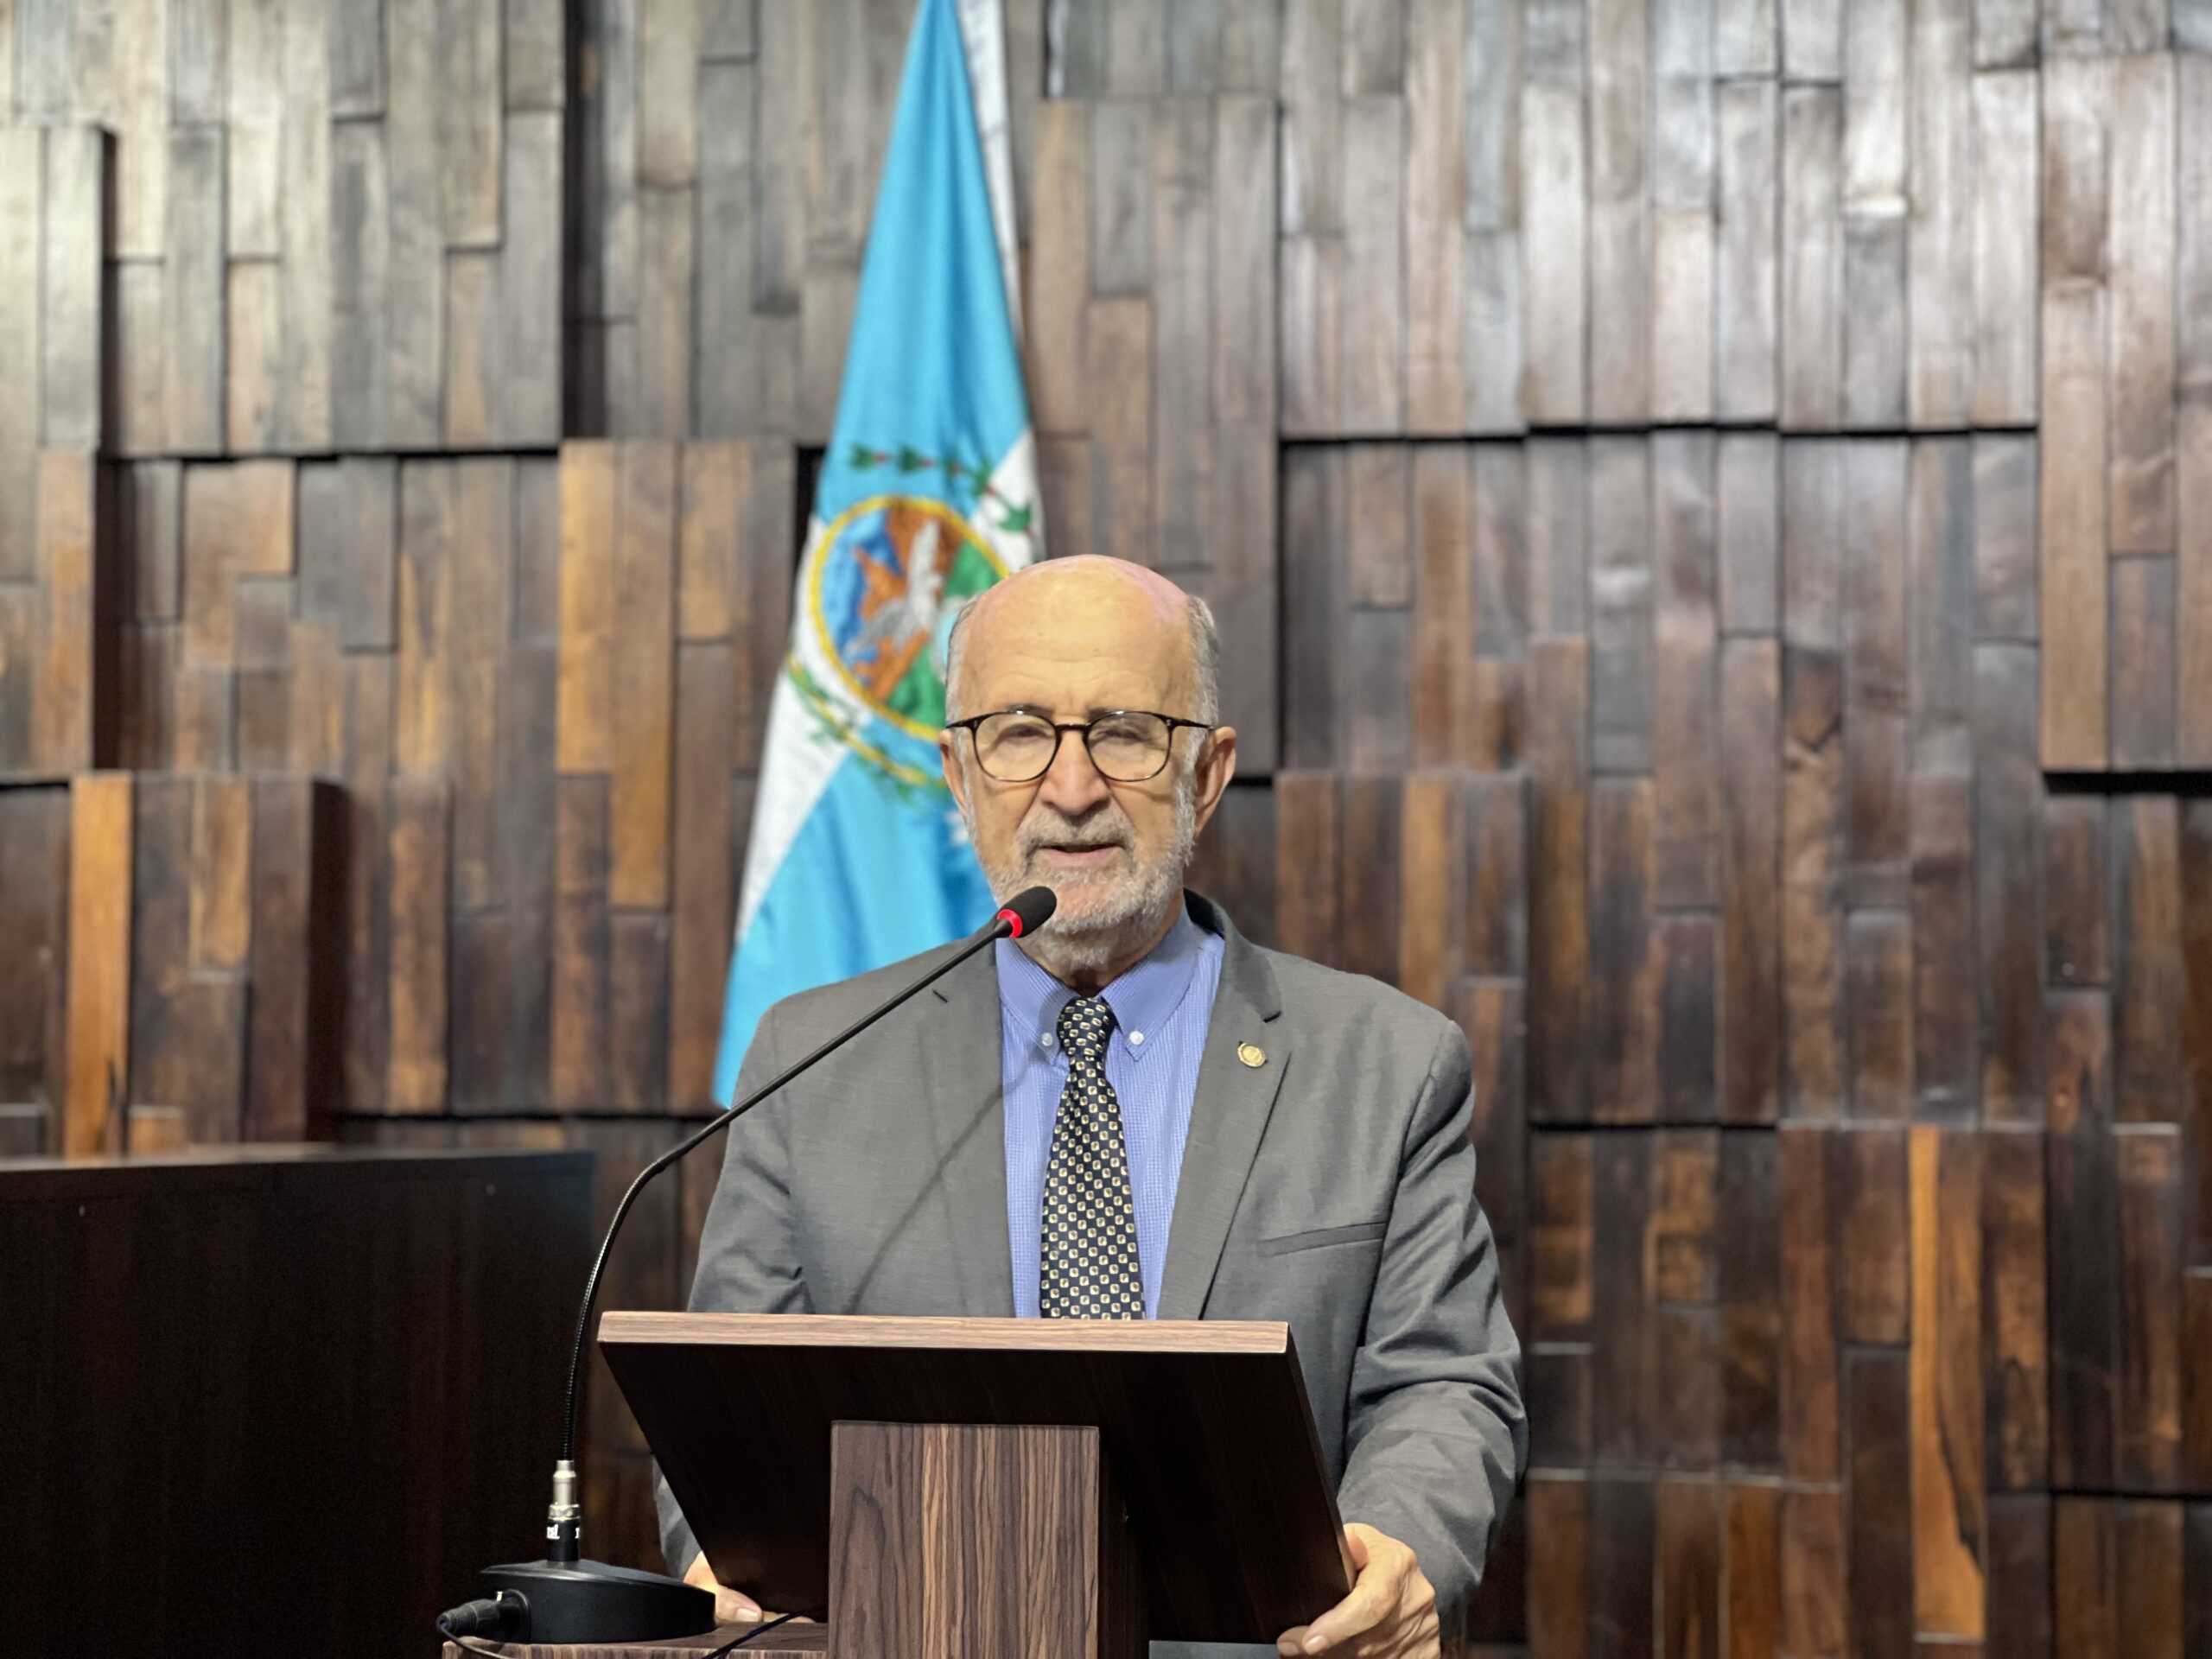 Deputado Luiz Paulo Destaca Avanços e Desafios da Reforma Tributária no Brasil